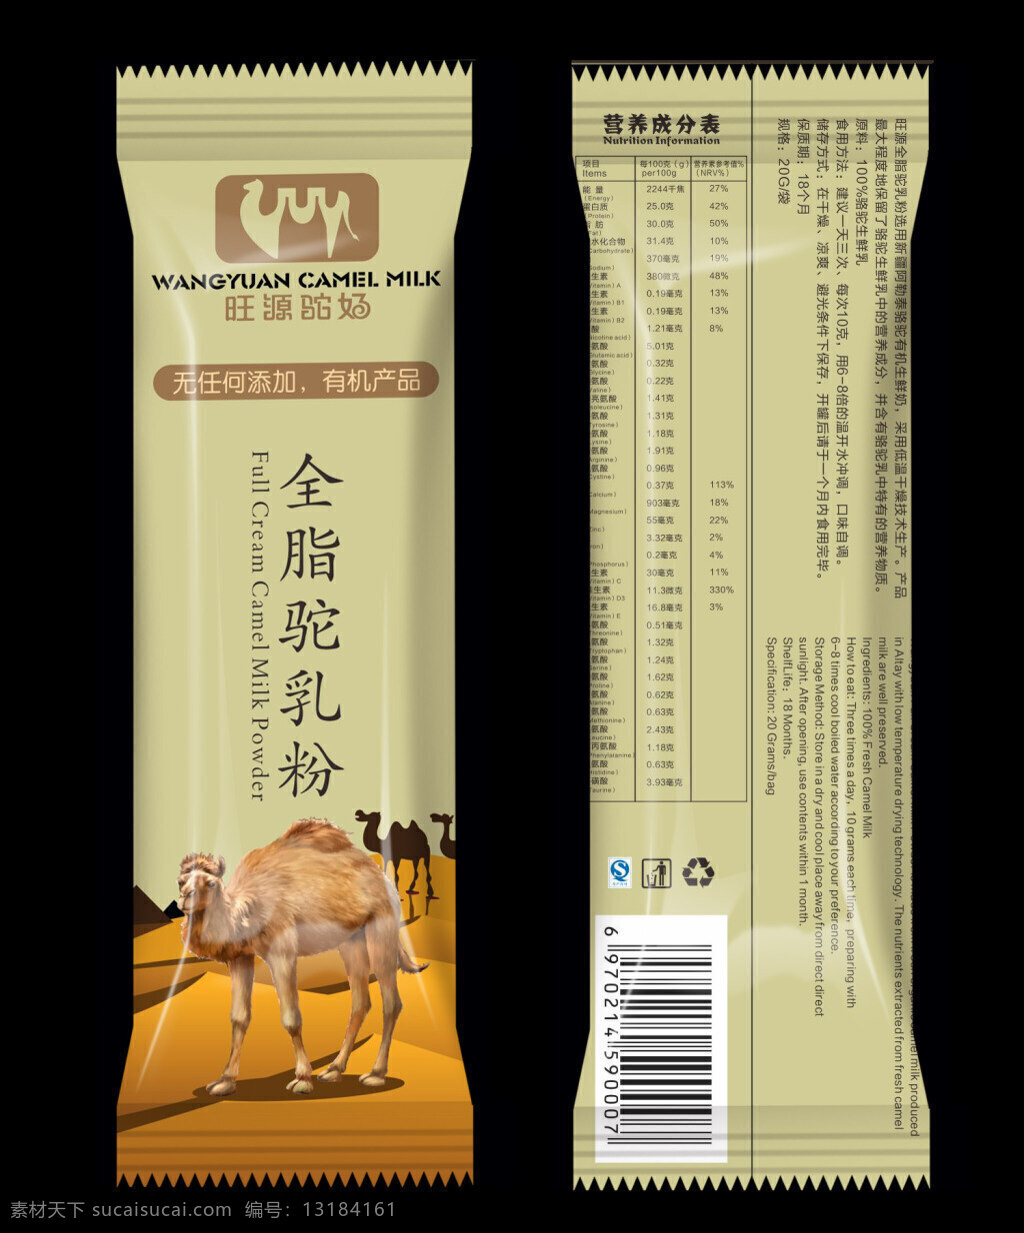 旺源驼奶 骆驼奶 骆驼包装 奶类包装 沙漠骆驼 黑色